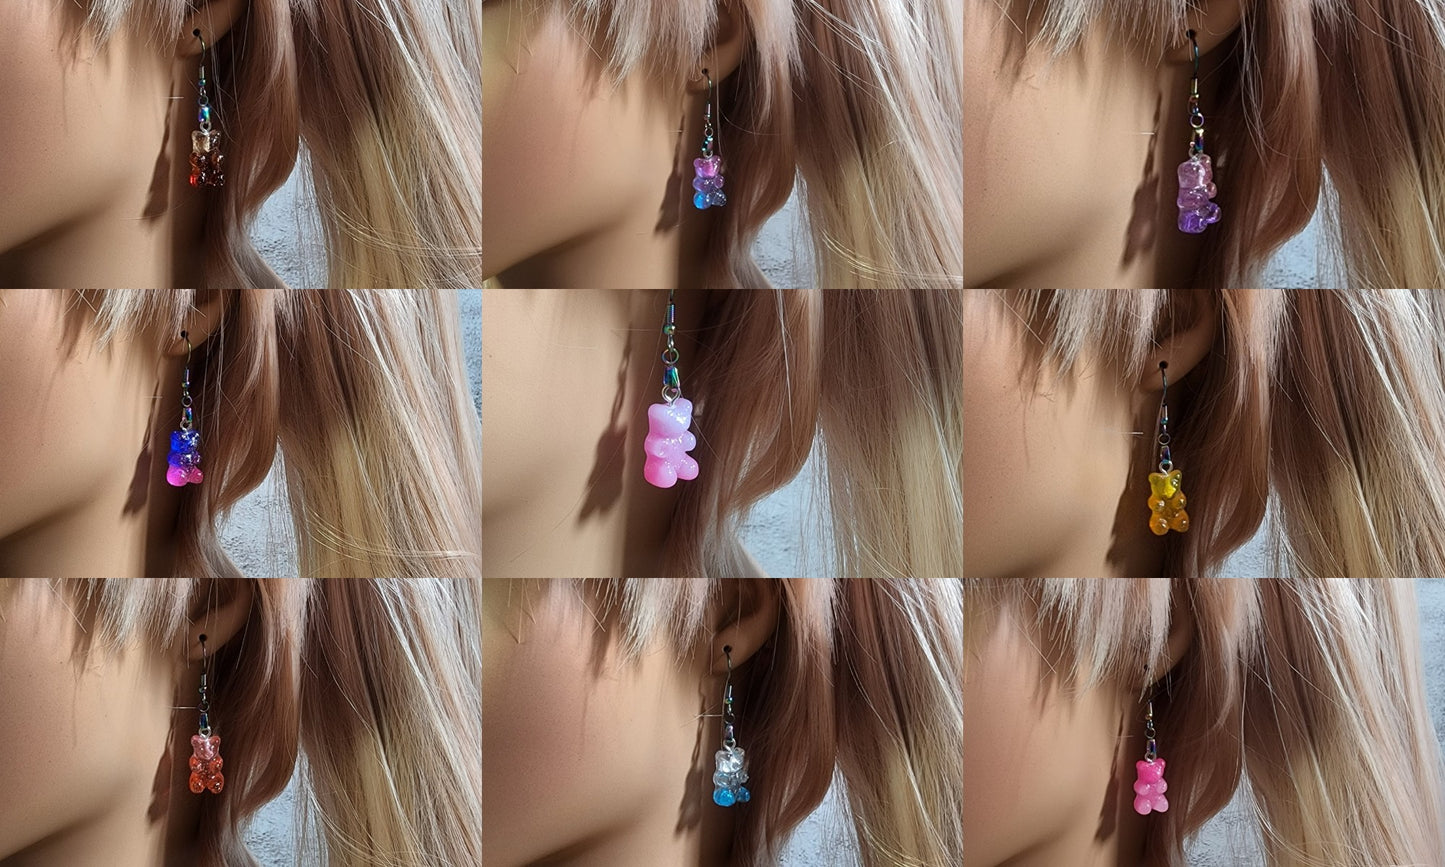 1-2 Scoops of Cute Kawaii or Spooky Earrings | 200+ variations Stud, dangles, drop dangles |